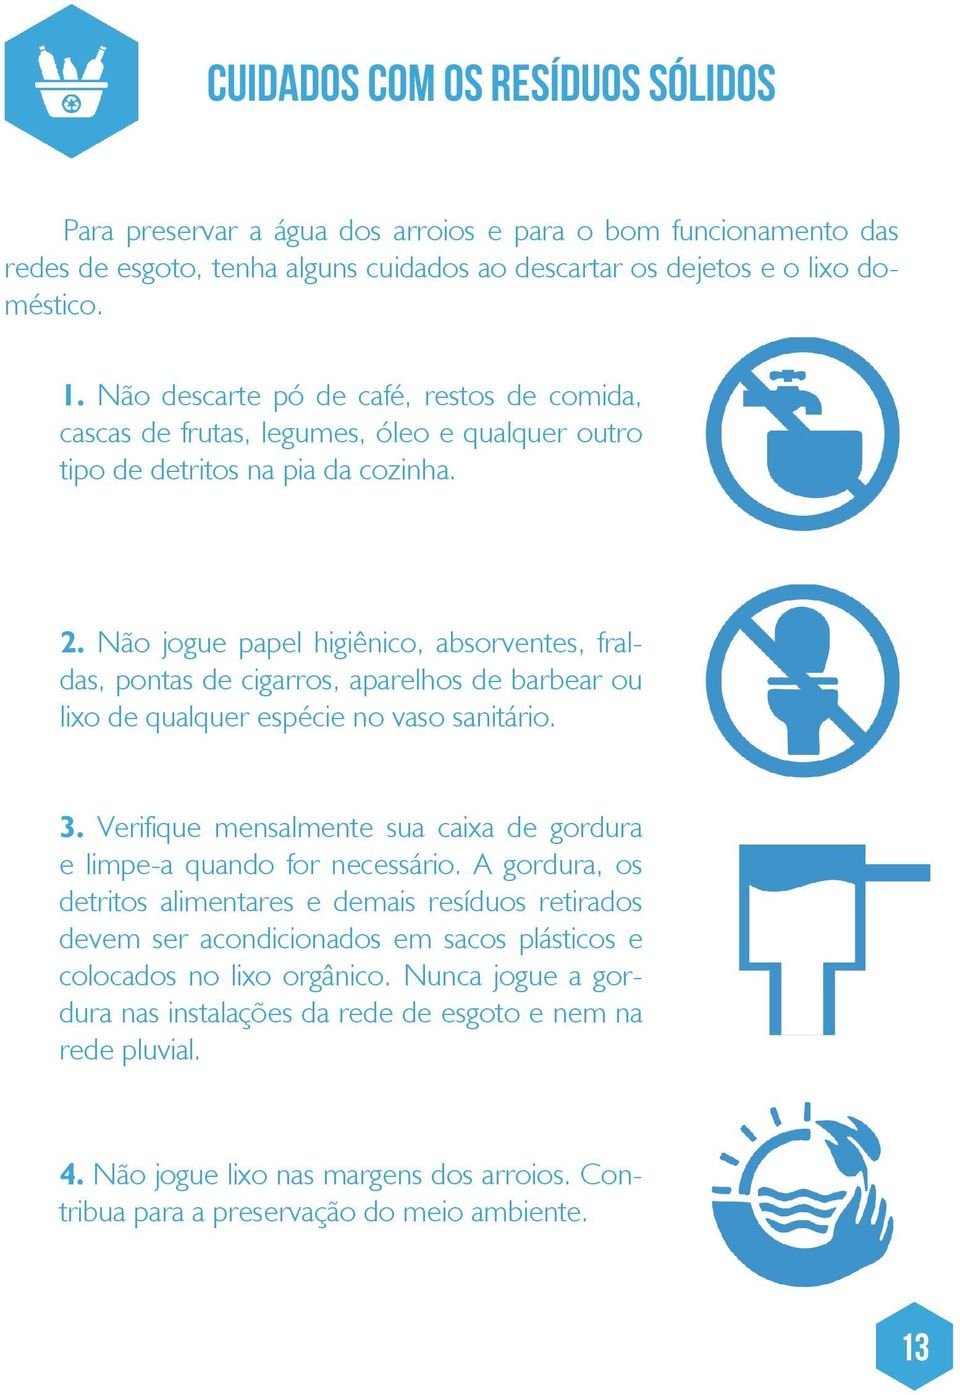 Não jogue papel higiênico, absorventes, fraldas, pontas de cigarros, aparelhos de barbear ou lixo de qualquer espécie no vaso sanitário. 3.